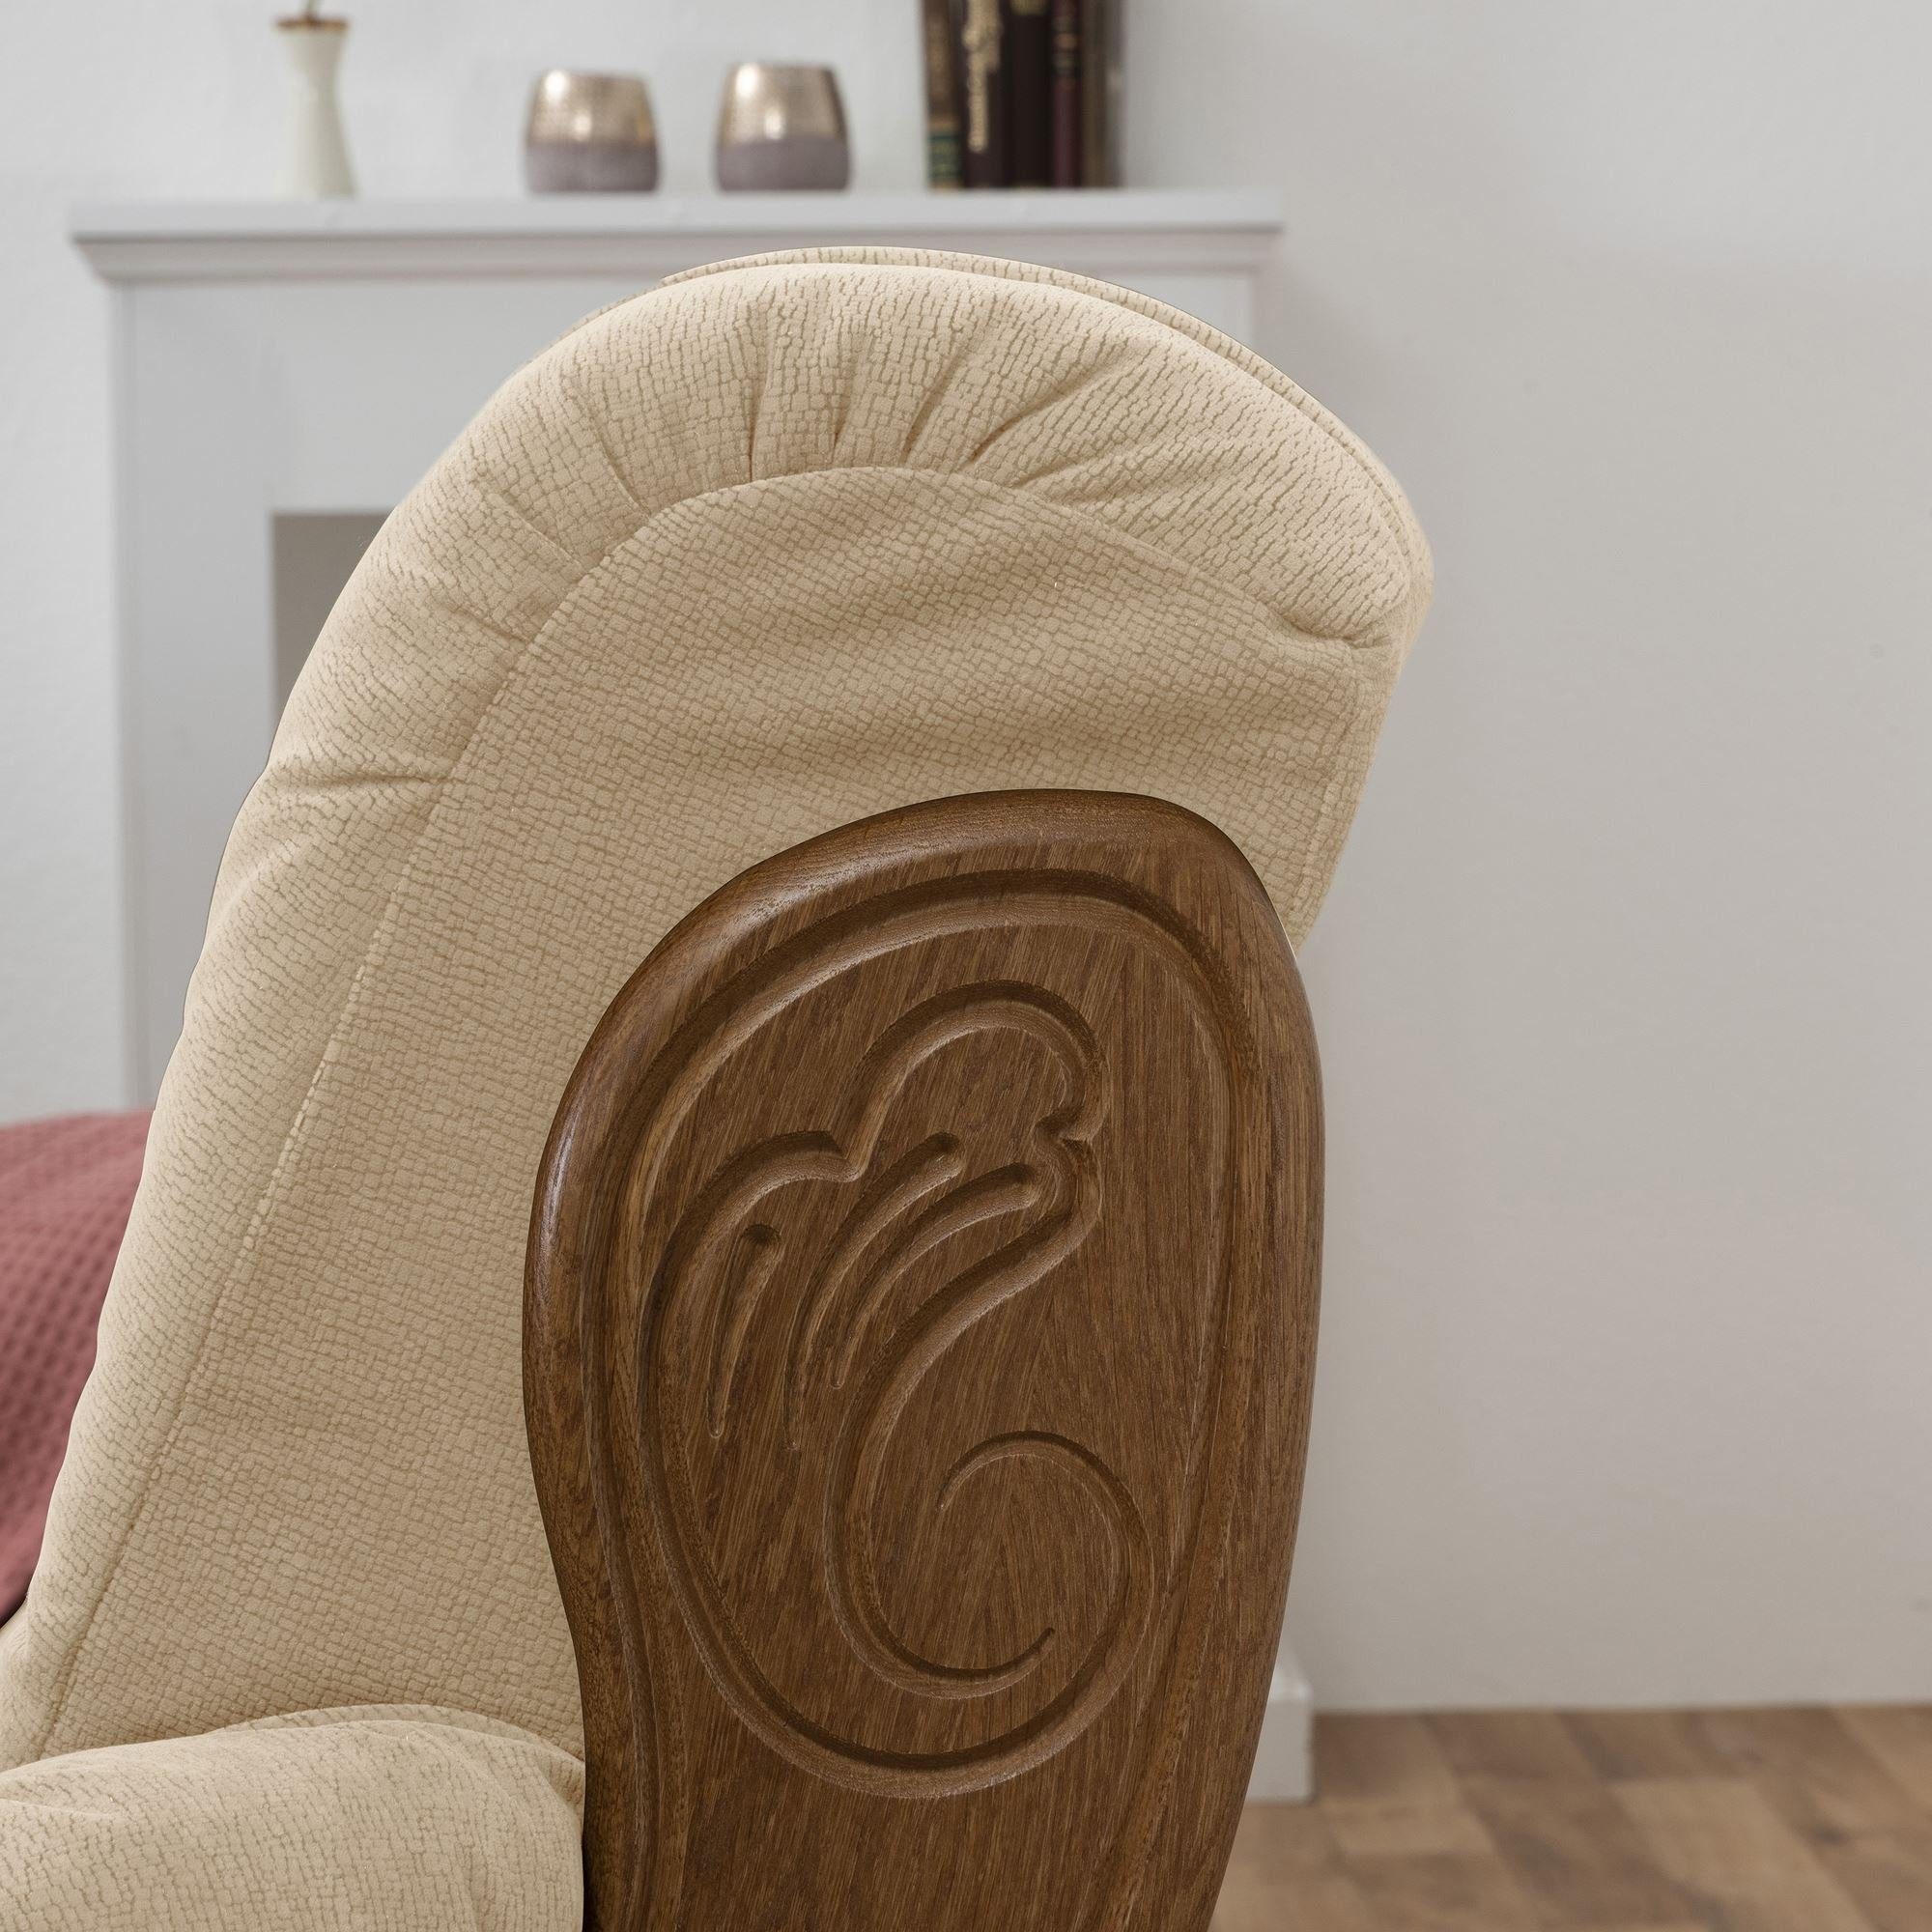 Katlin 3-Sitzer Kessel Eiche rustik, inkl. hochwertig verarbeitet,bequemer Sofa Versand Sparpreis 1 aufm Kostenlosem Flockstoff Sofa 58 Sitz Teile, Bezug